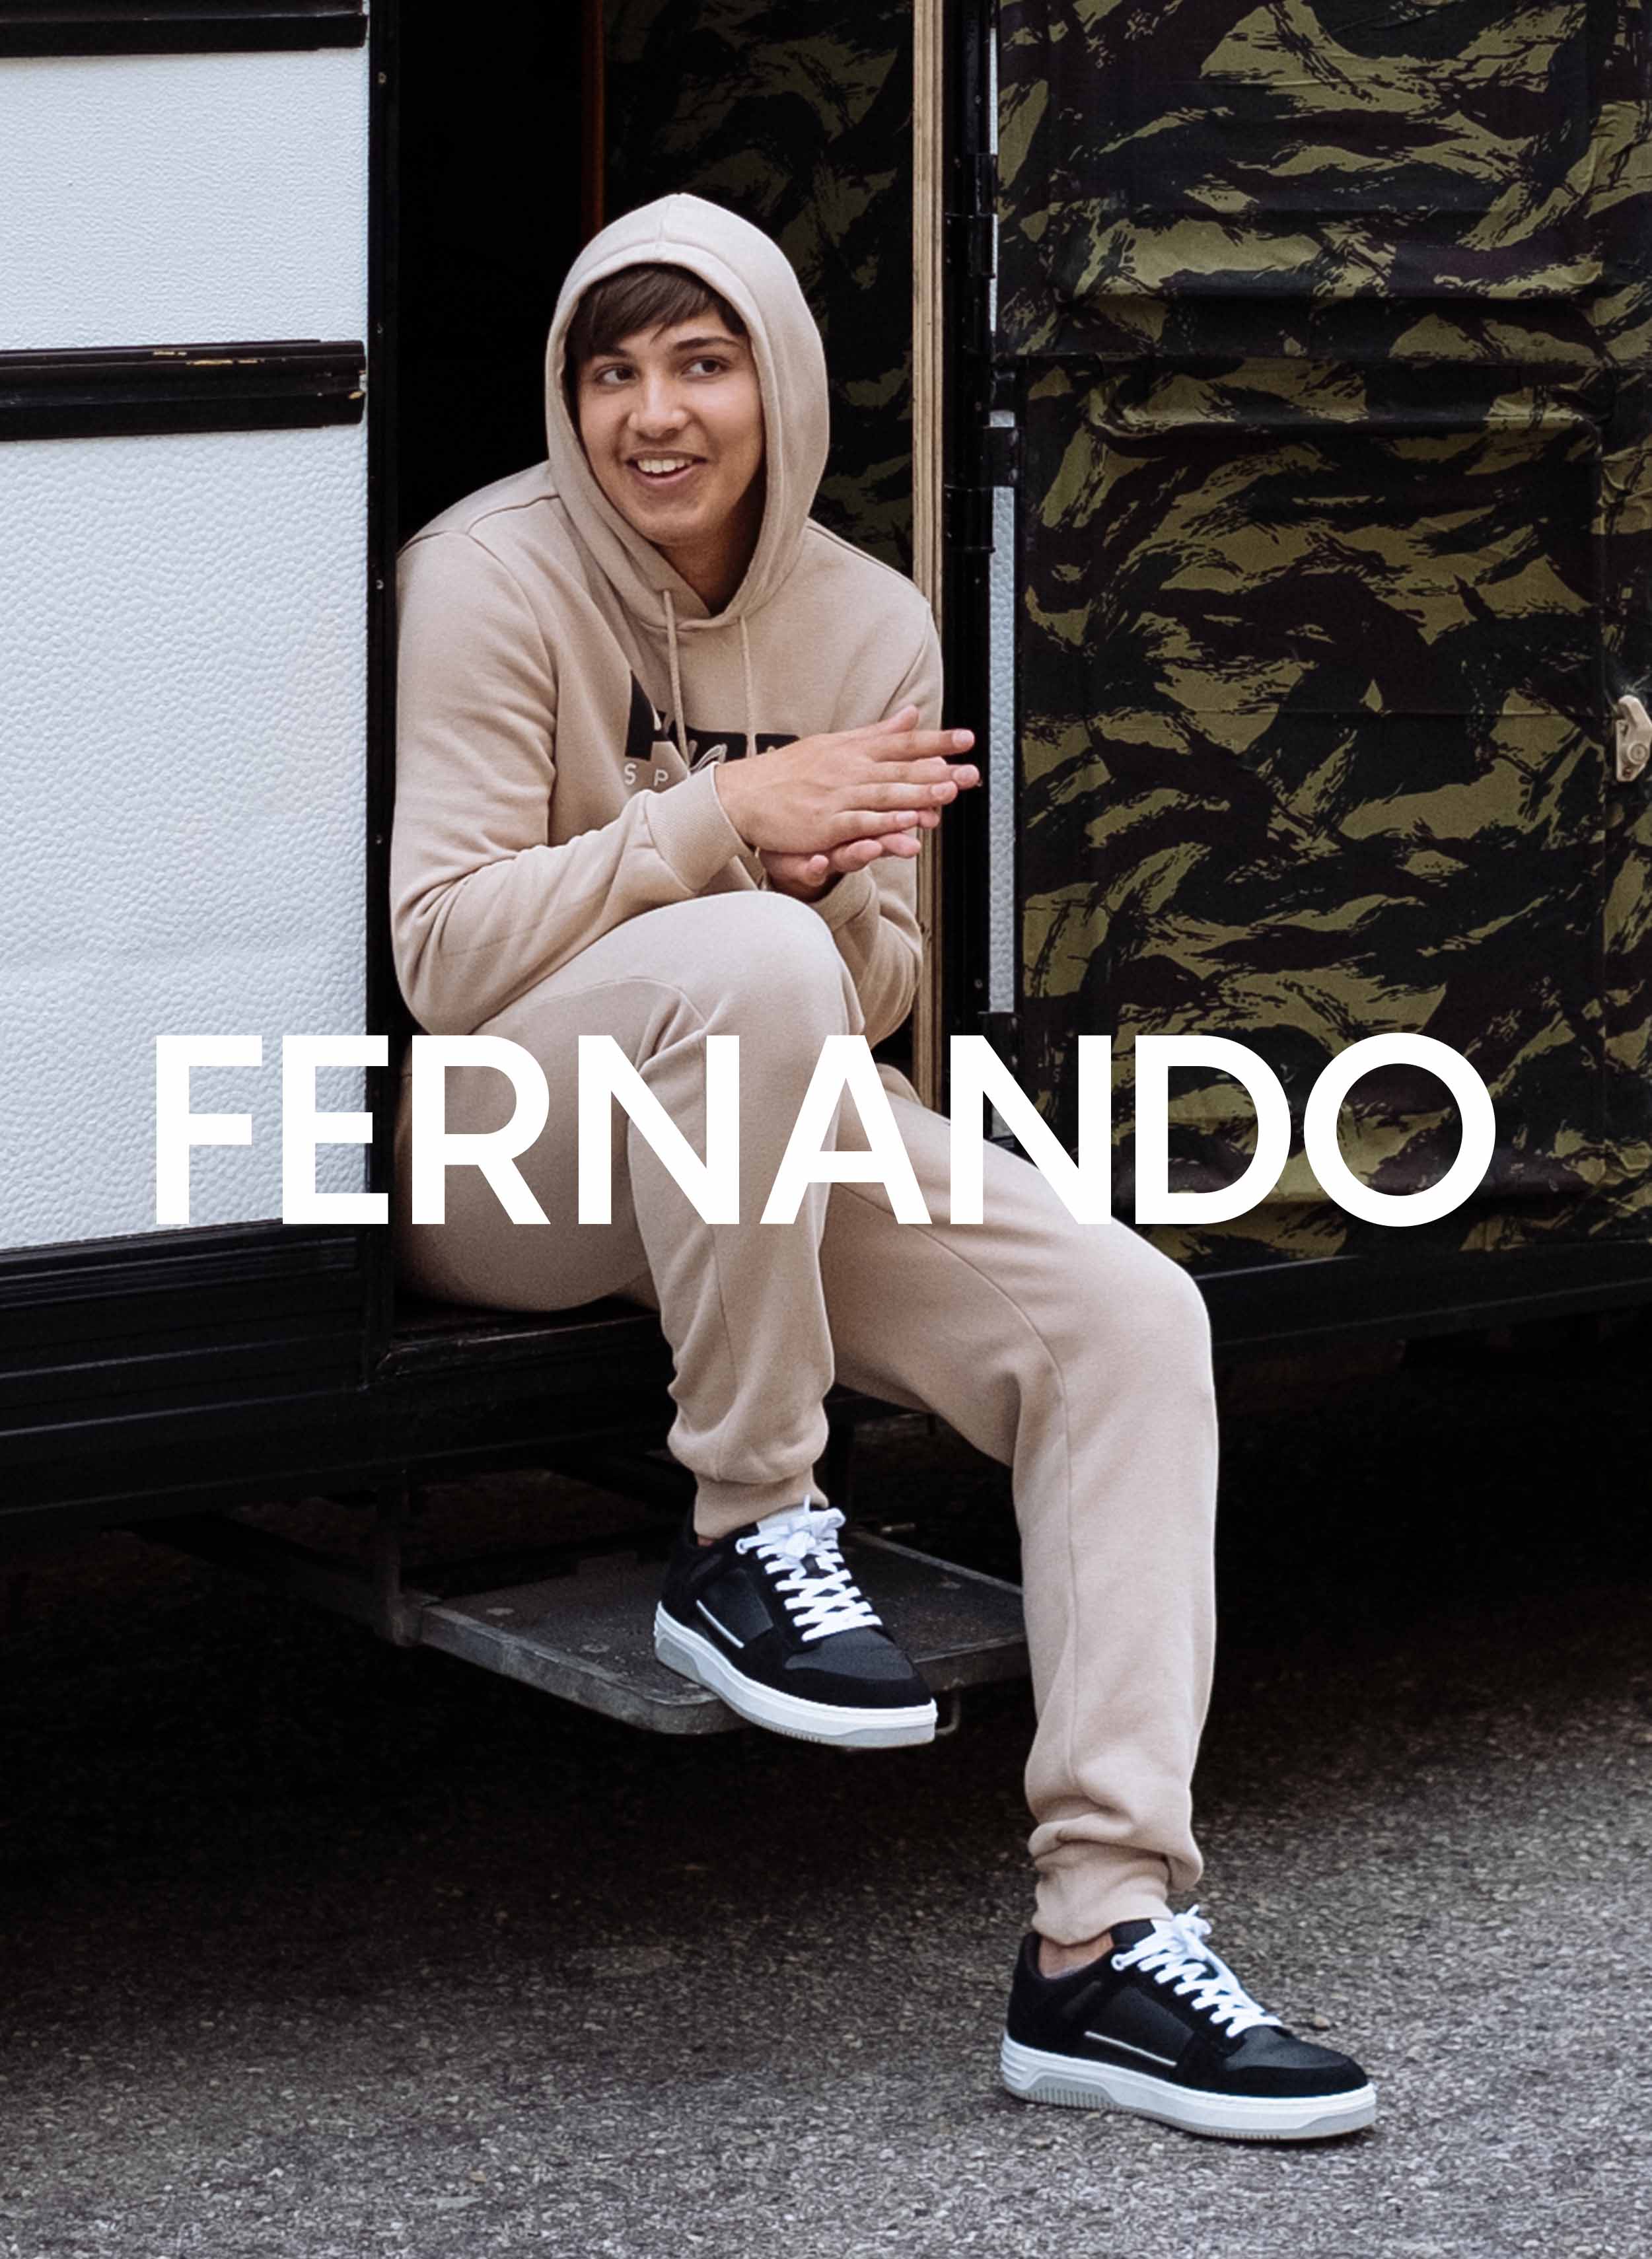 Fernando sentado en una autocaravana, Diverge sneakers, promoviendo el impacto social y el calzado personalizado a través del proyecto Imagine.